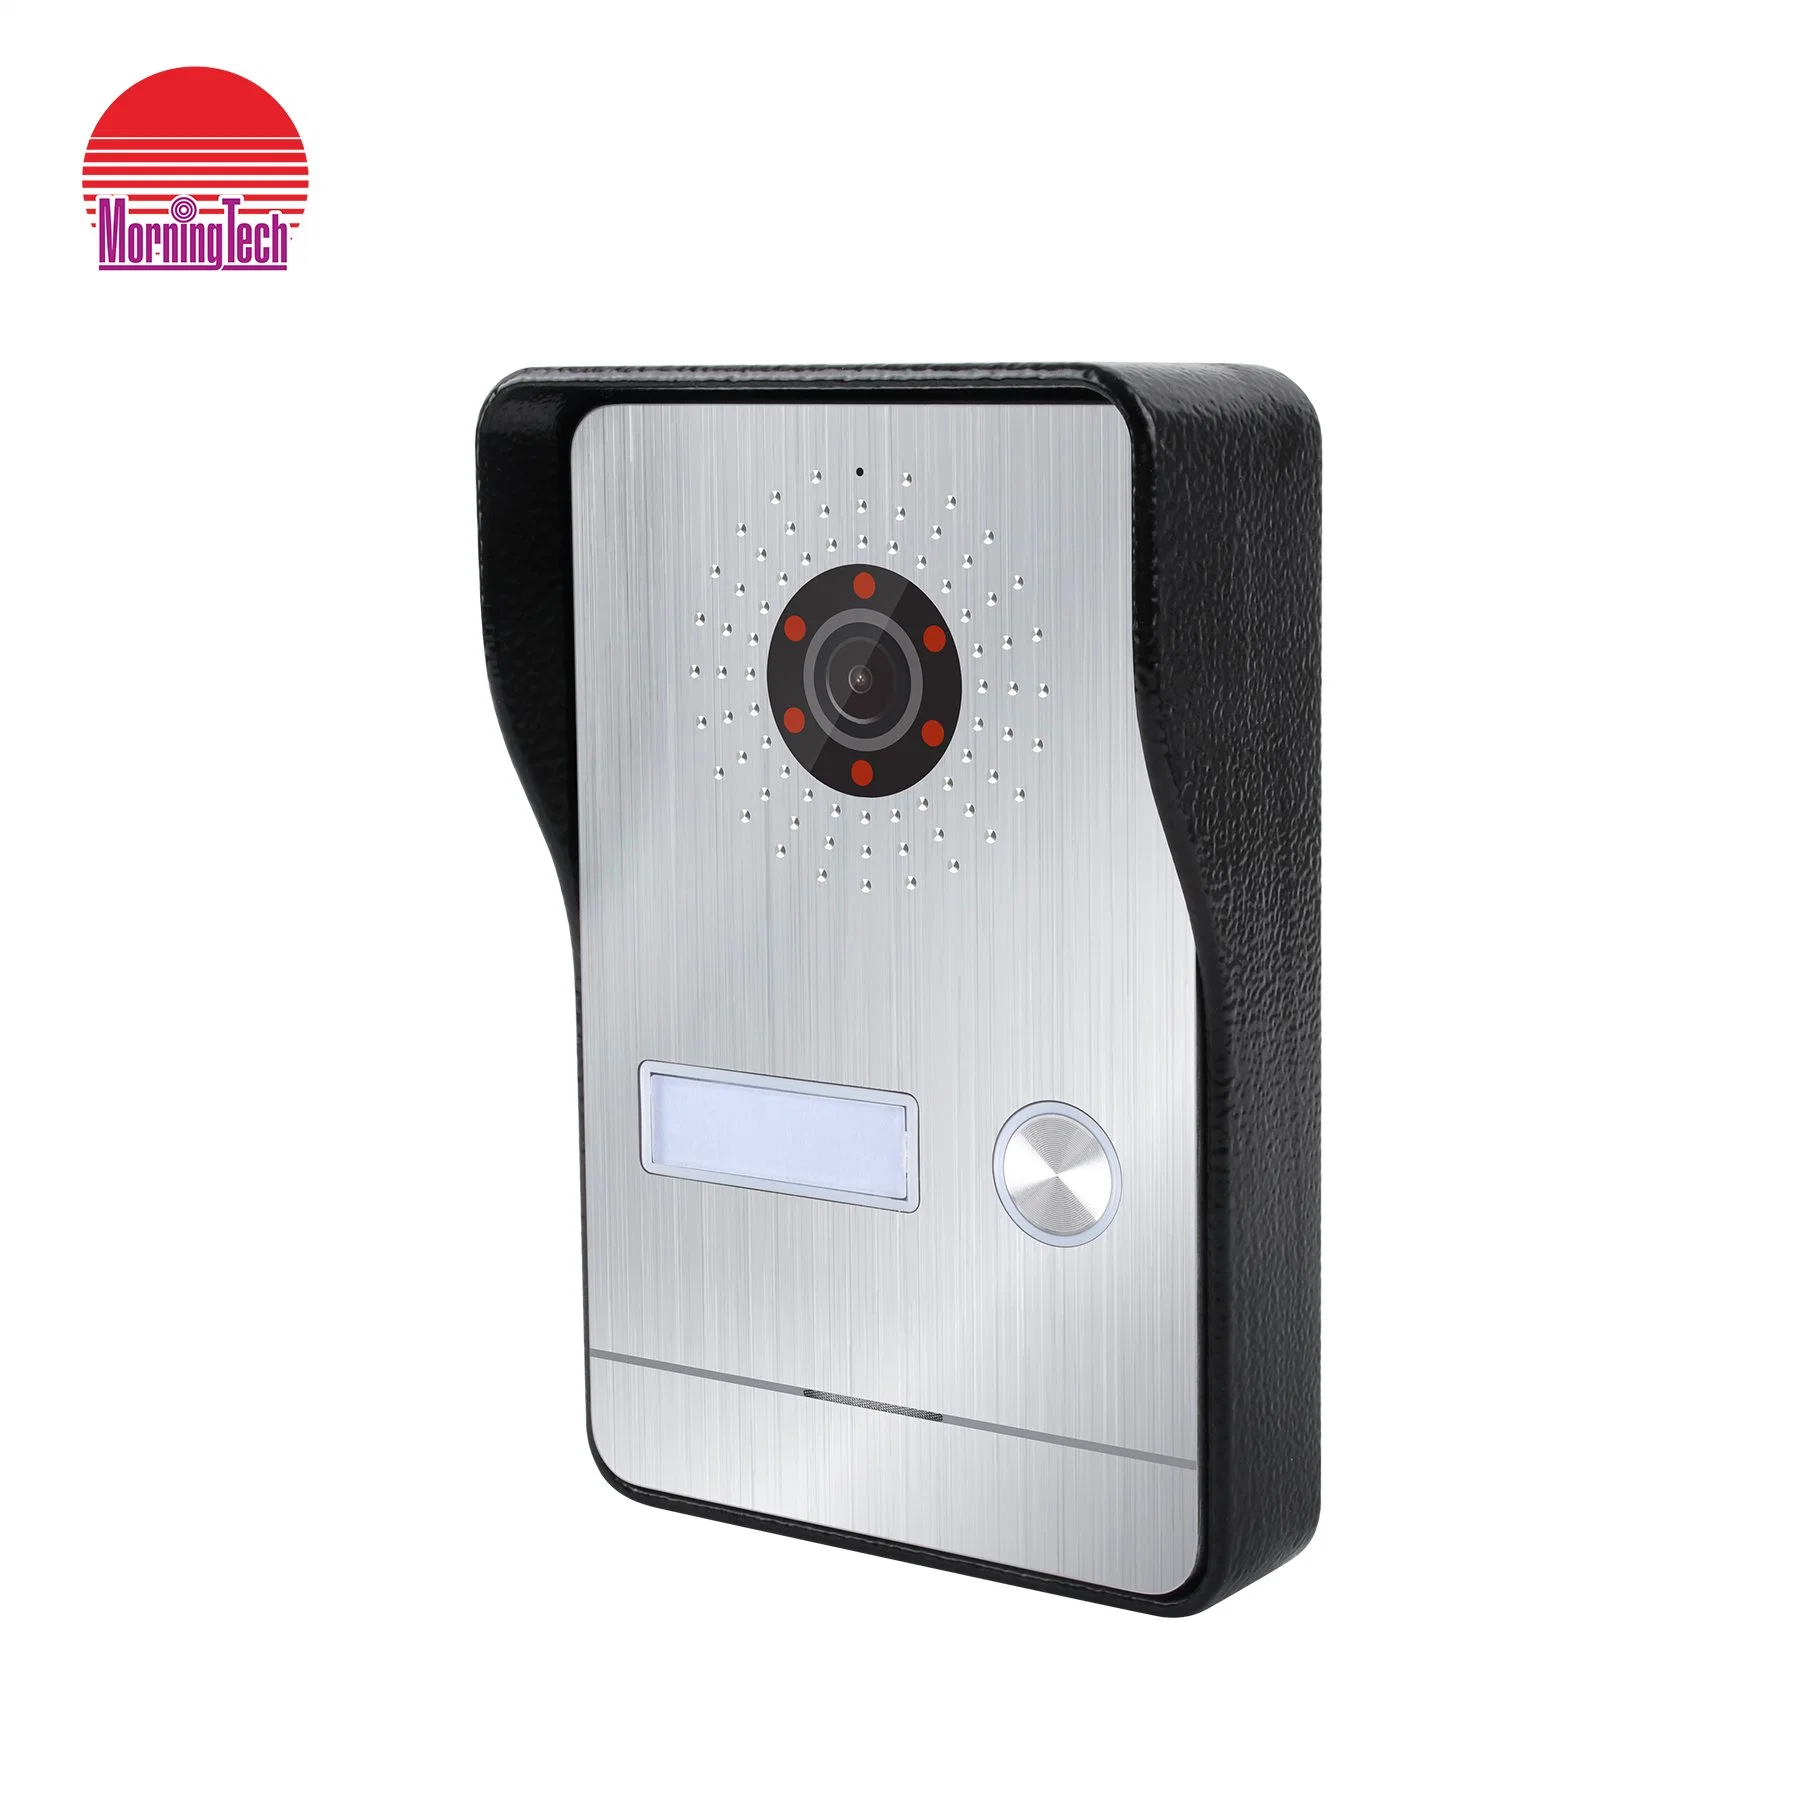 Home Security System Video Türklingel Nachtsicht Außensprechanlage Videotür mit Zutrittskontrollfunktion